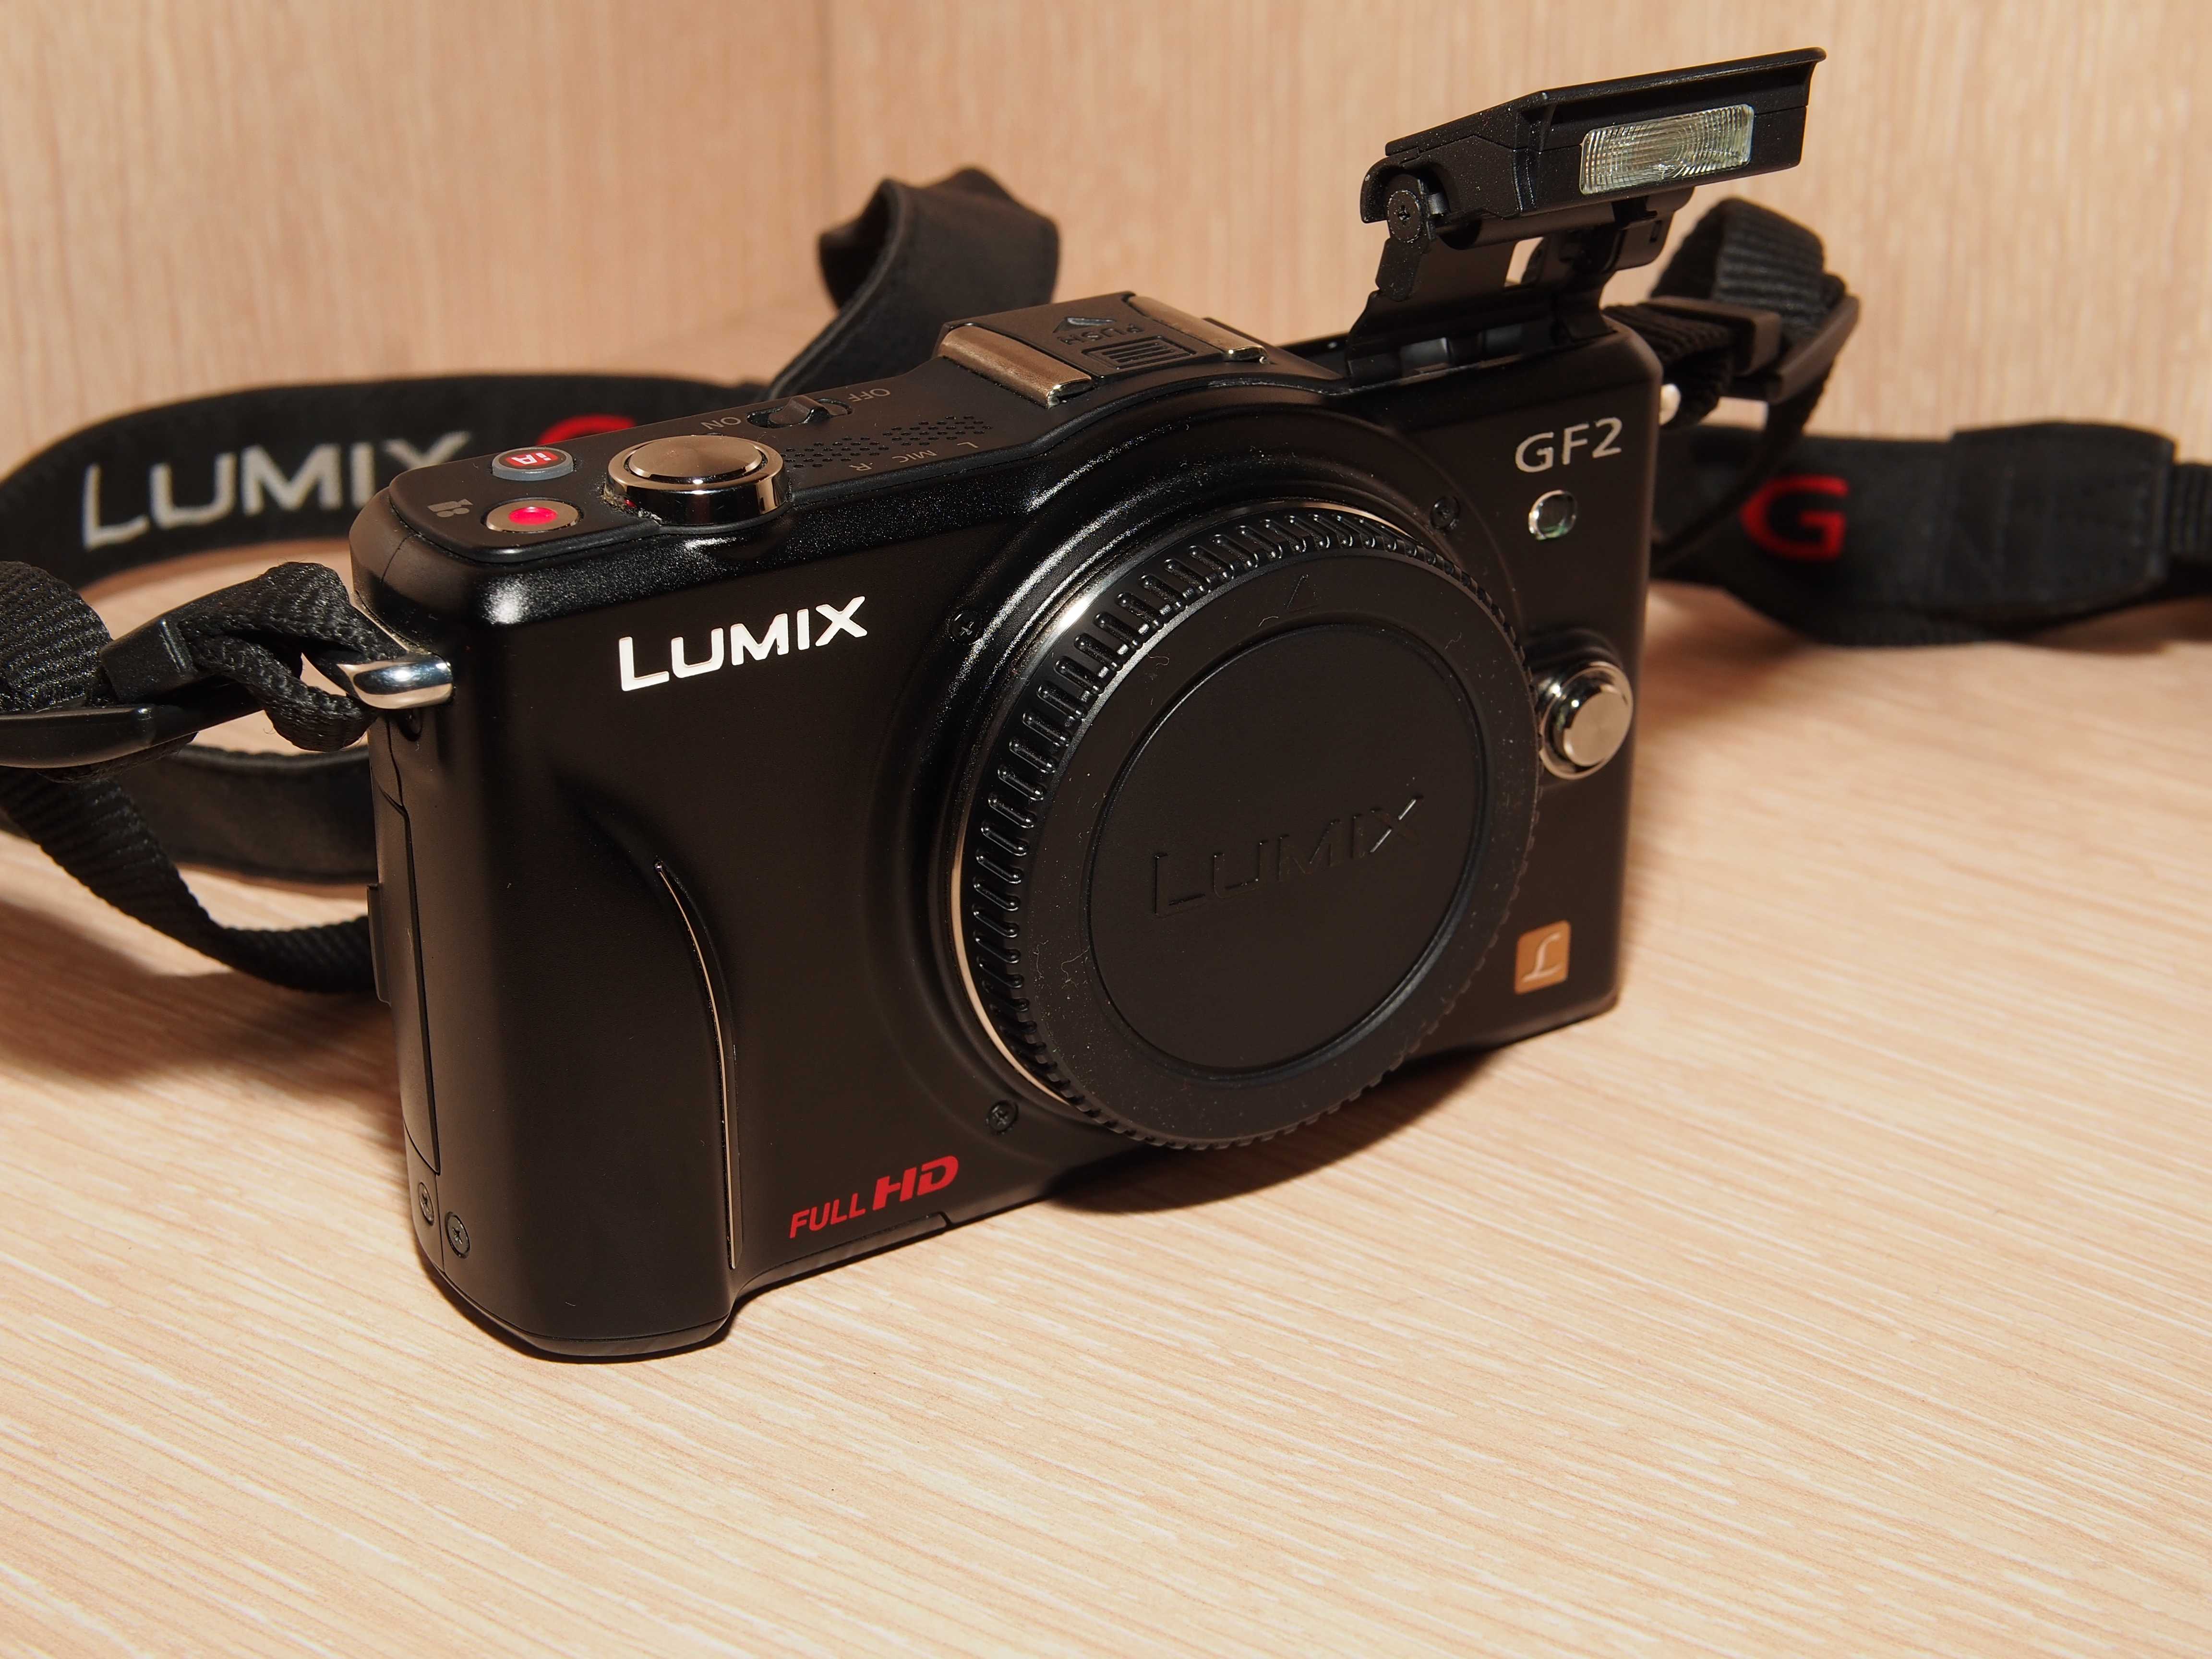 Фотоаппарат панасоник lumix dmc-gf2 kit купить недорого в москве, цена 2021, отзывы г. москва